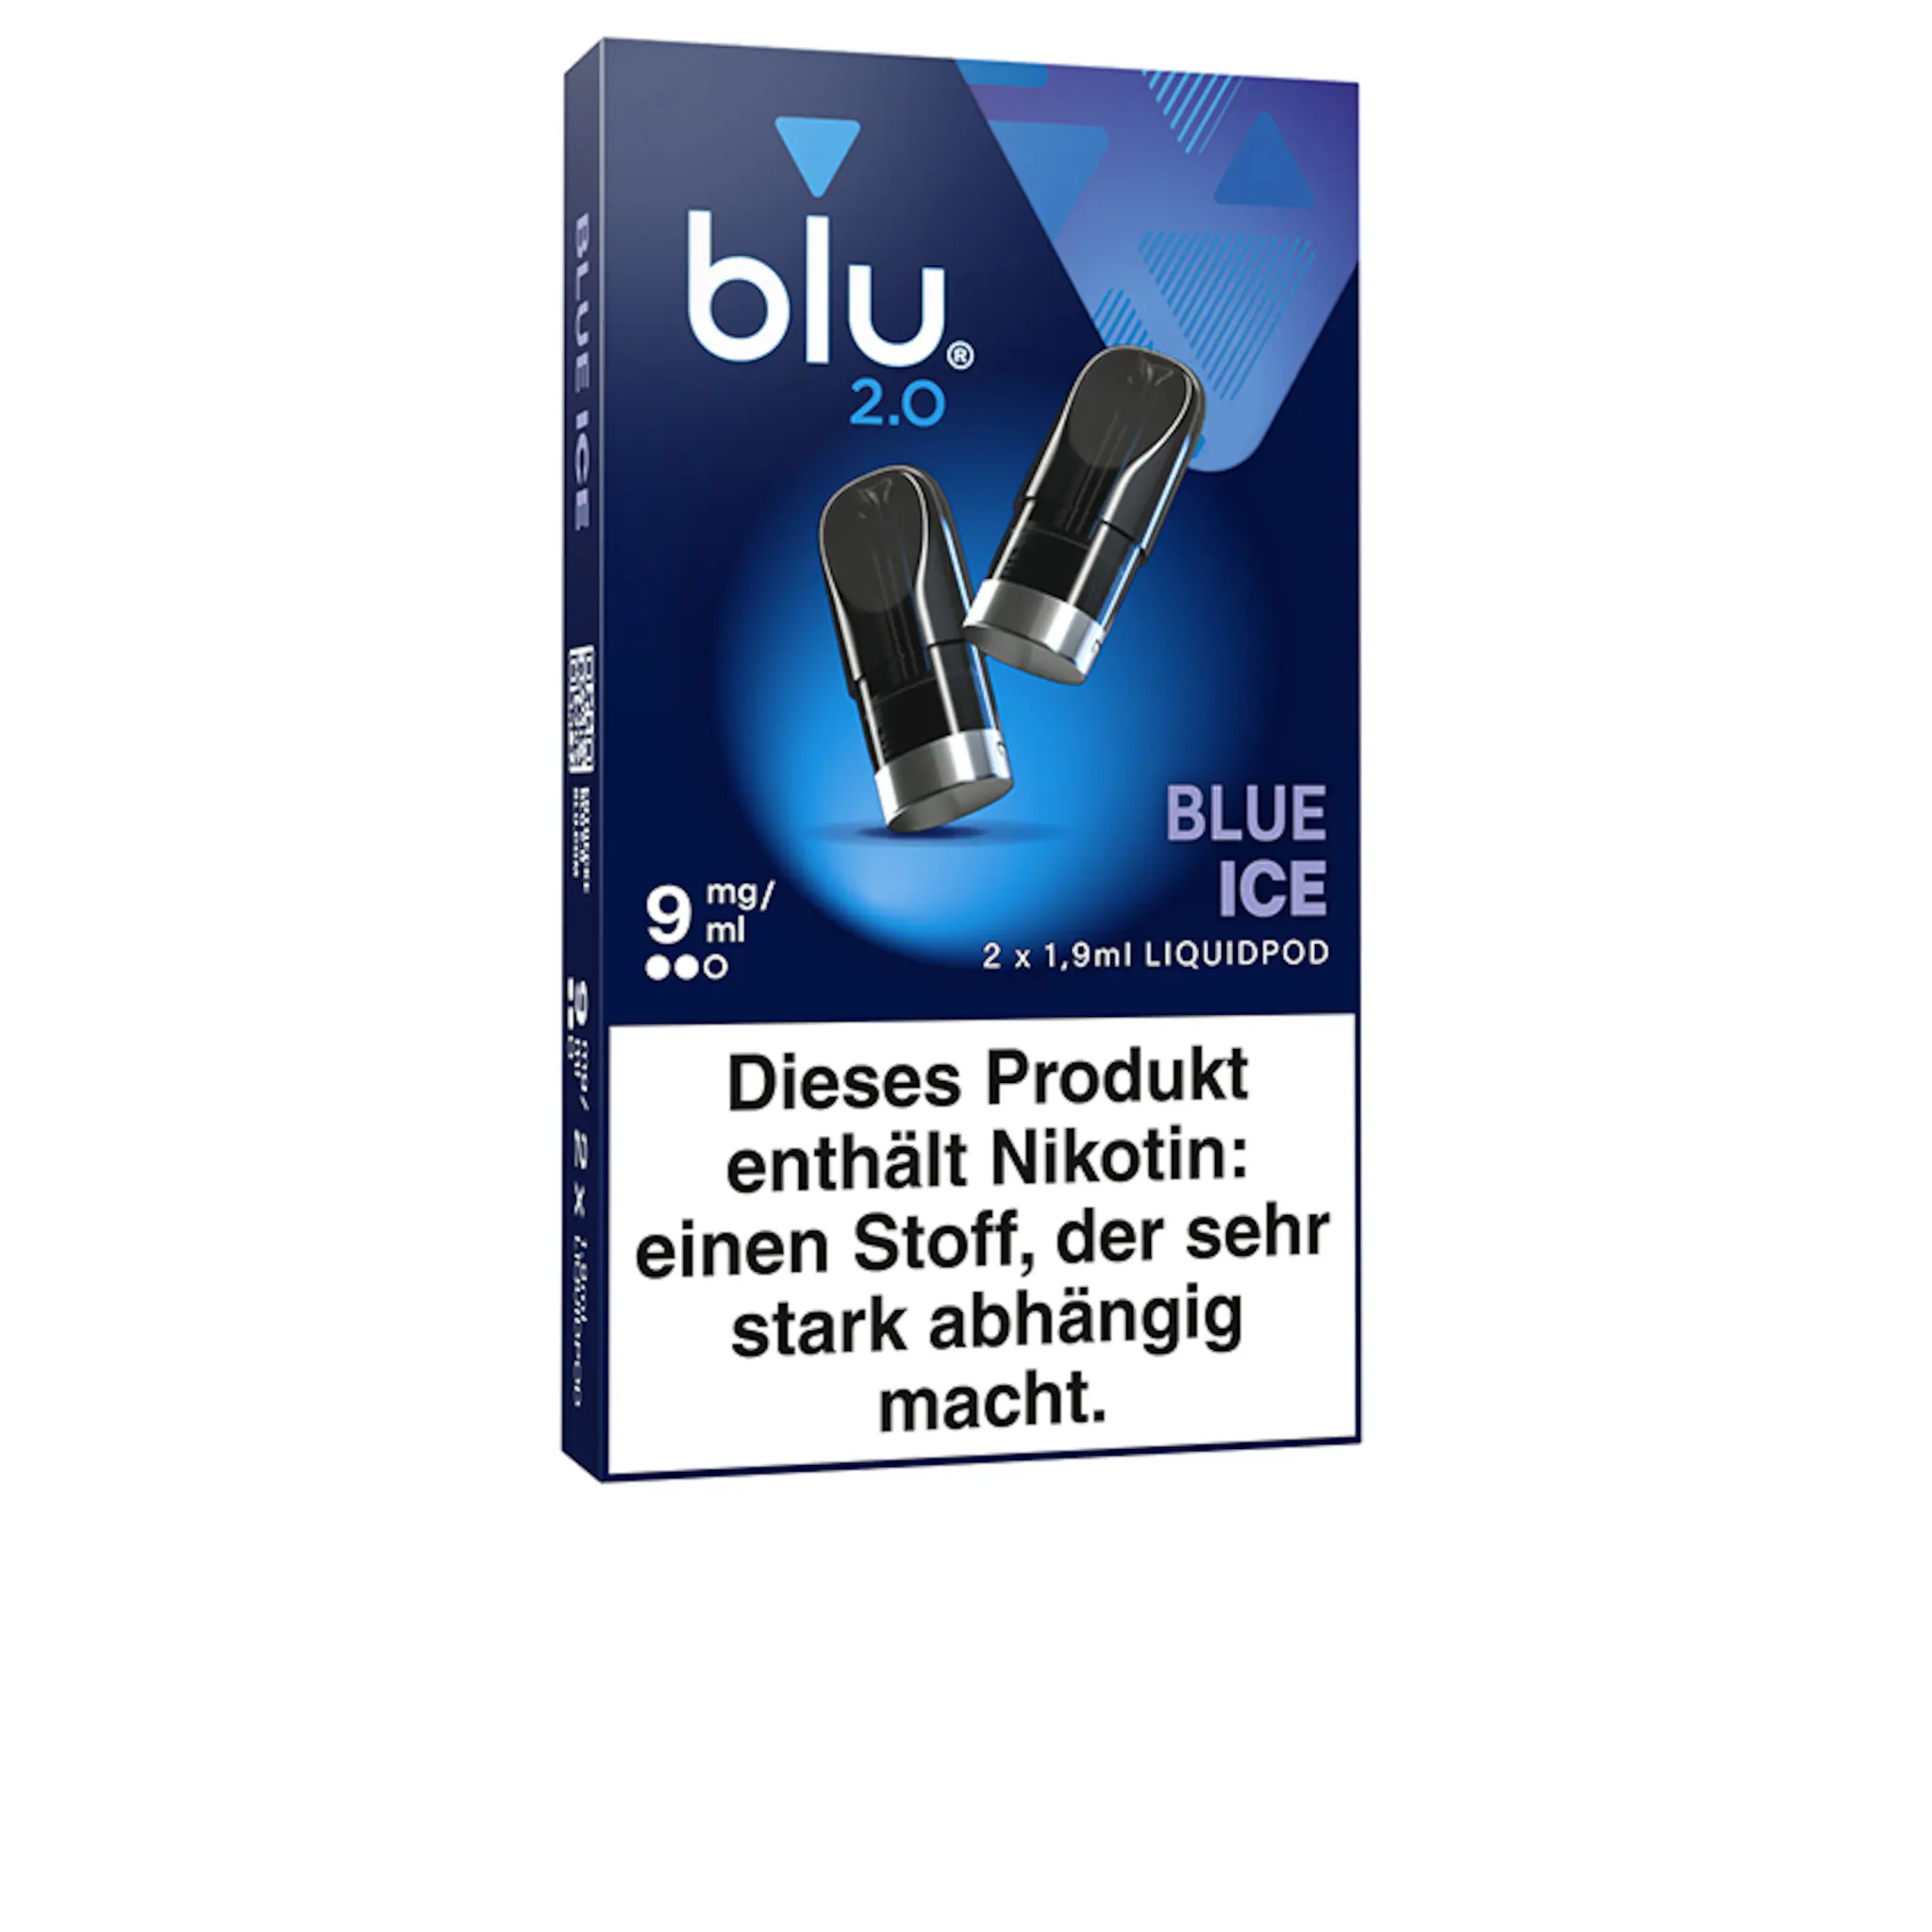 Blu 2.0 - Blue Ice